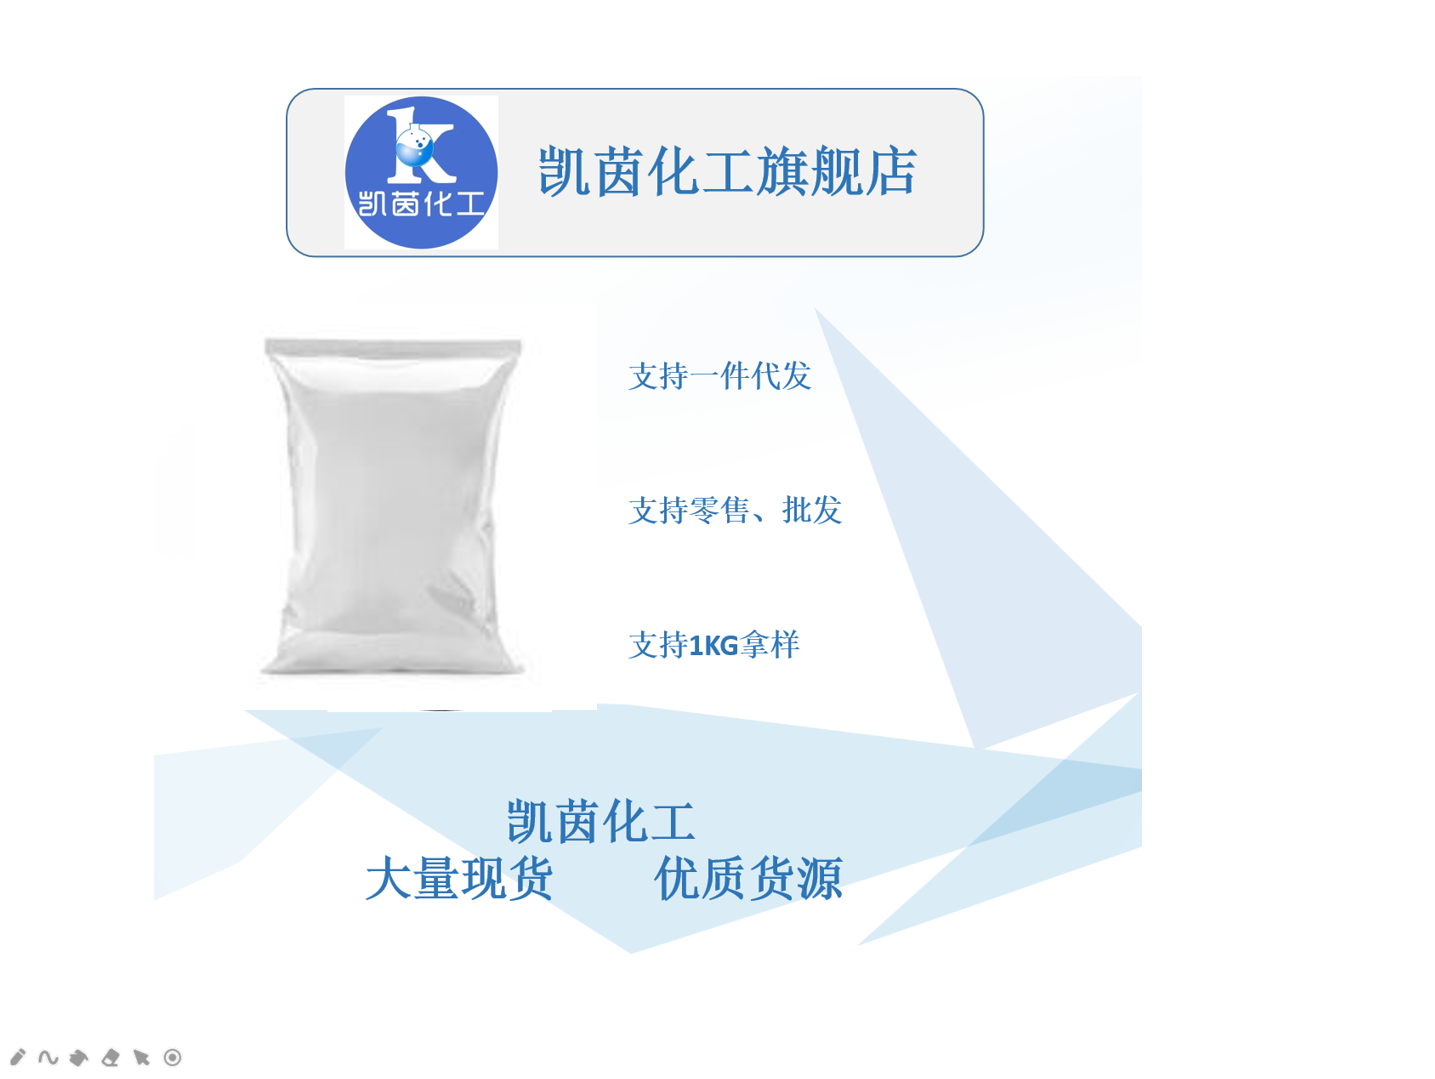 矽比科 BR-5 高岭土 高纯度 微细硅微粉 橡胶化合物专用添加剂